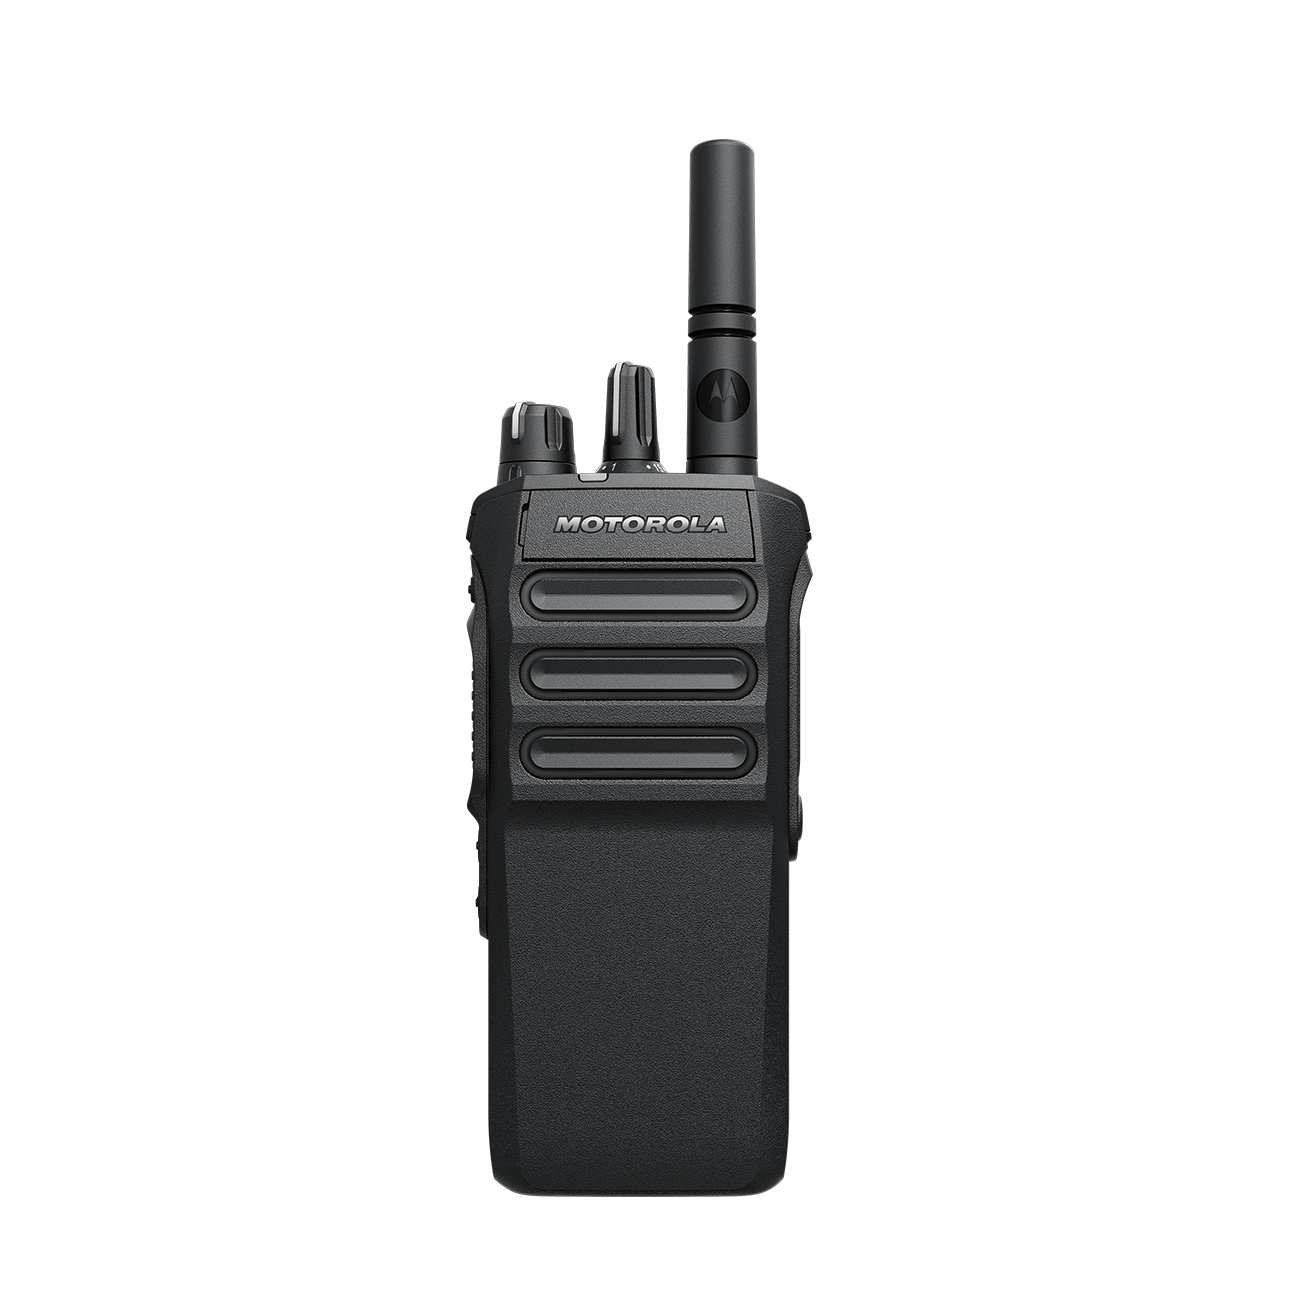 Портативная DMR радиостанция Motorola  Mototrbo R7 NKP Capable